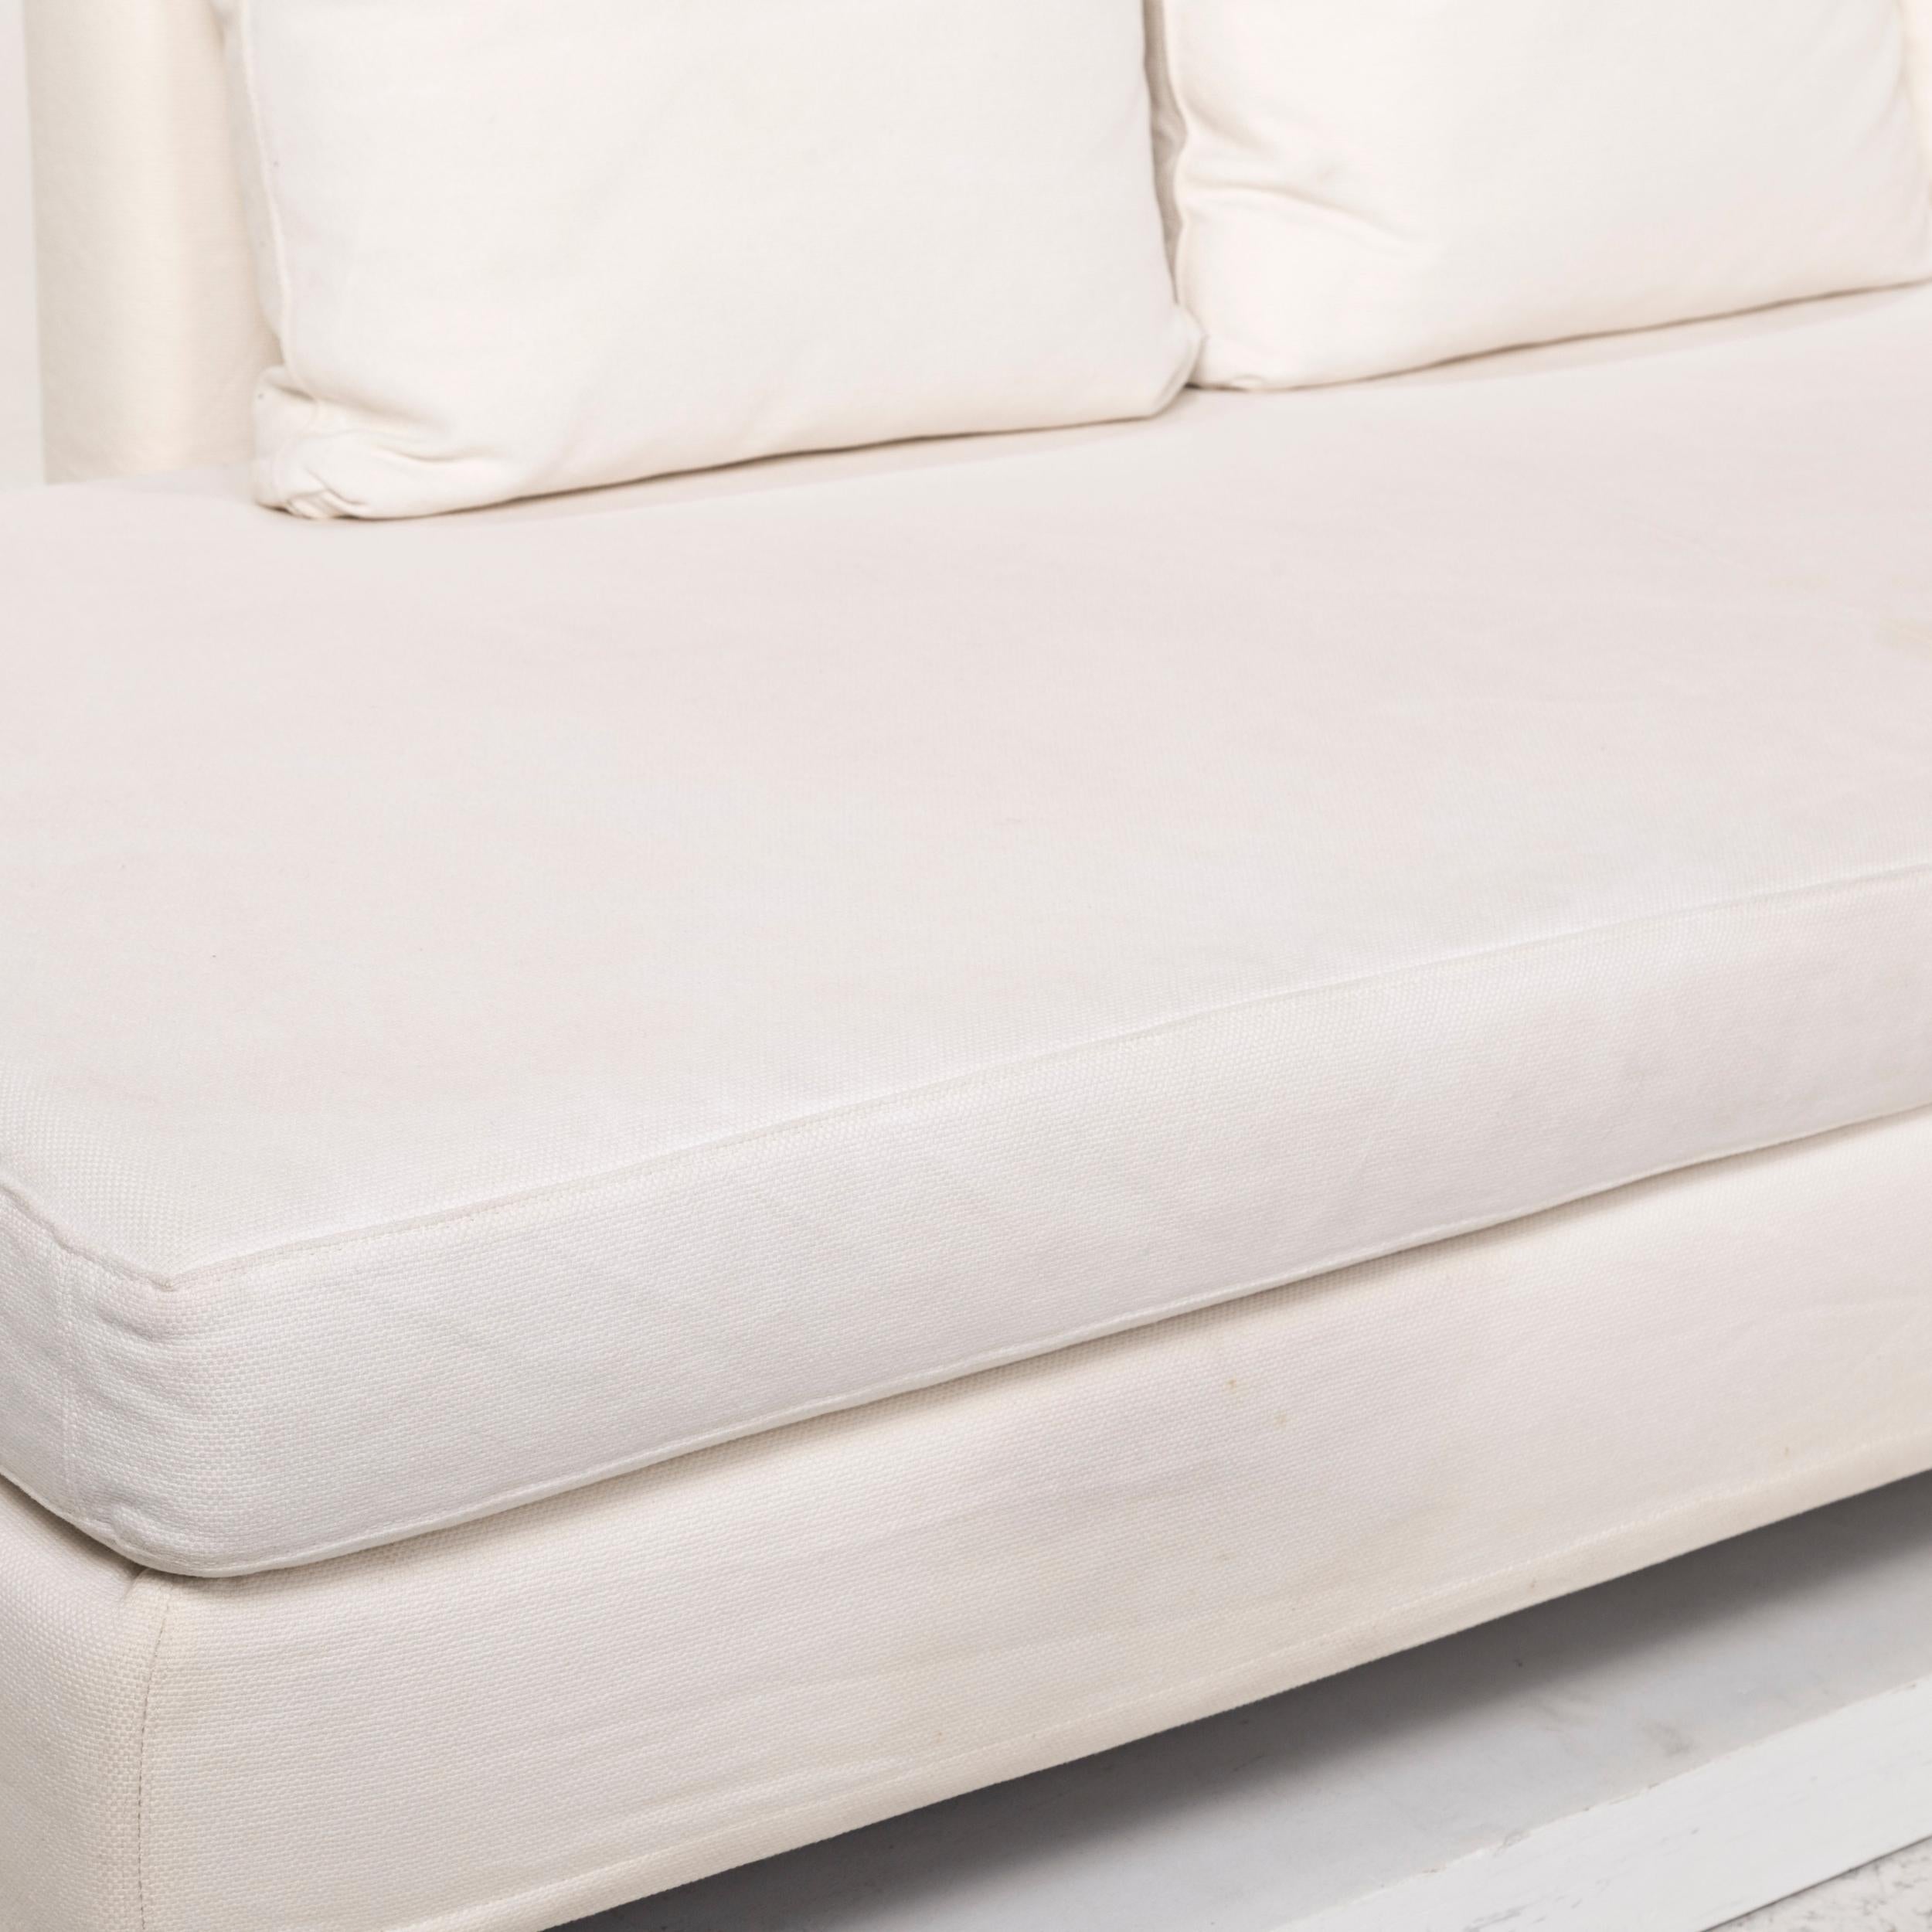 cream corner sofa